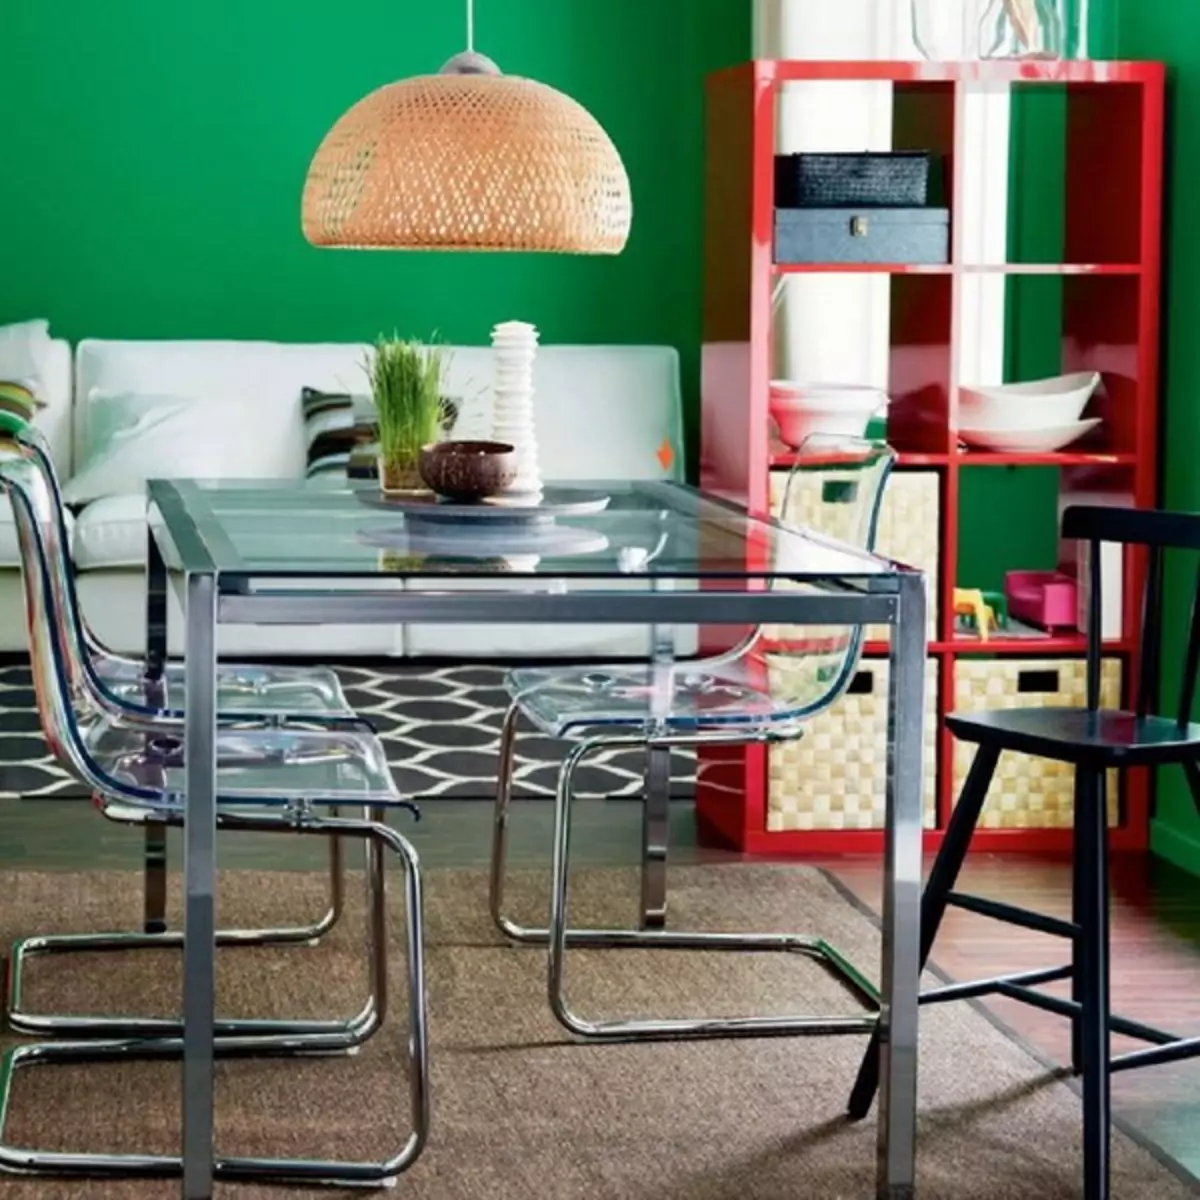 Interior de la cuina i menjador del catàleg IKEA 2019 (20 fotos)